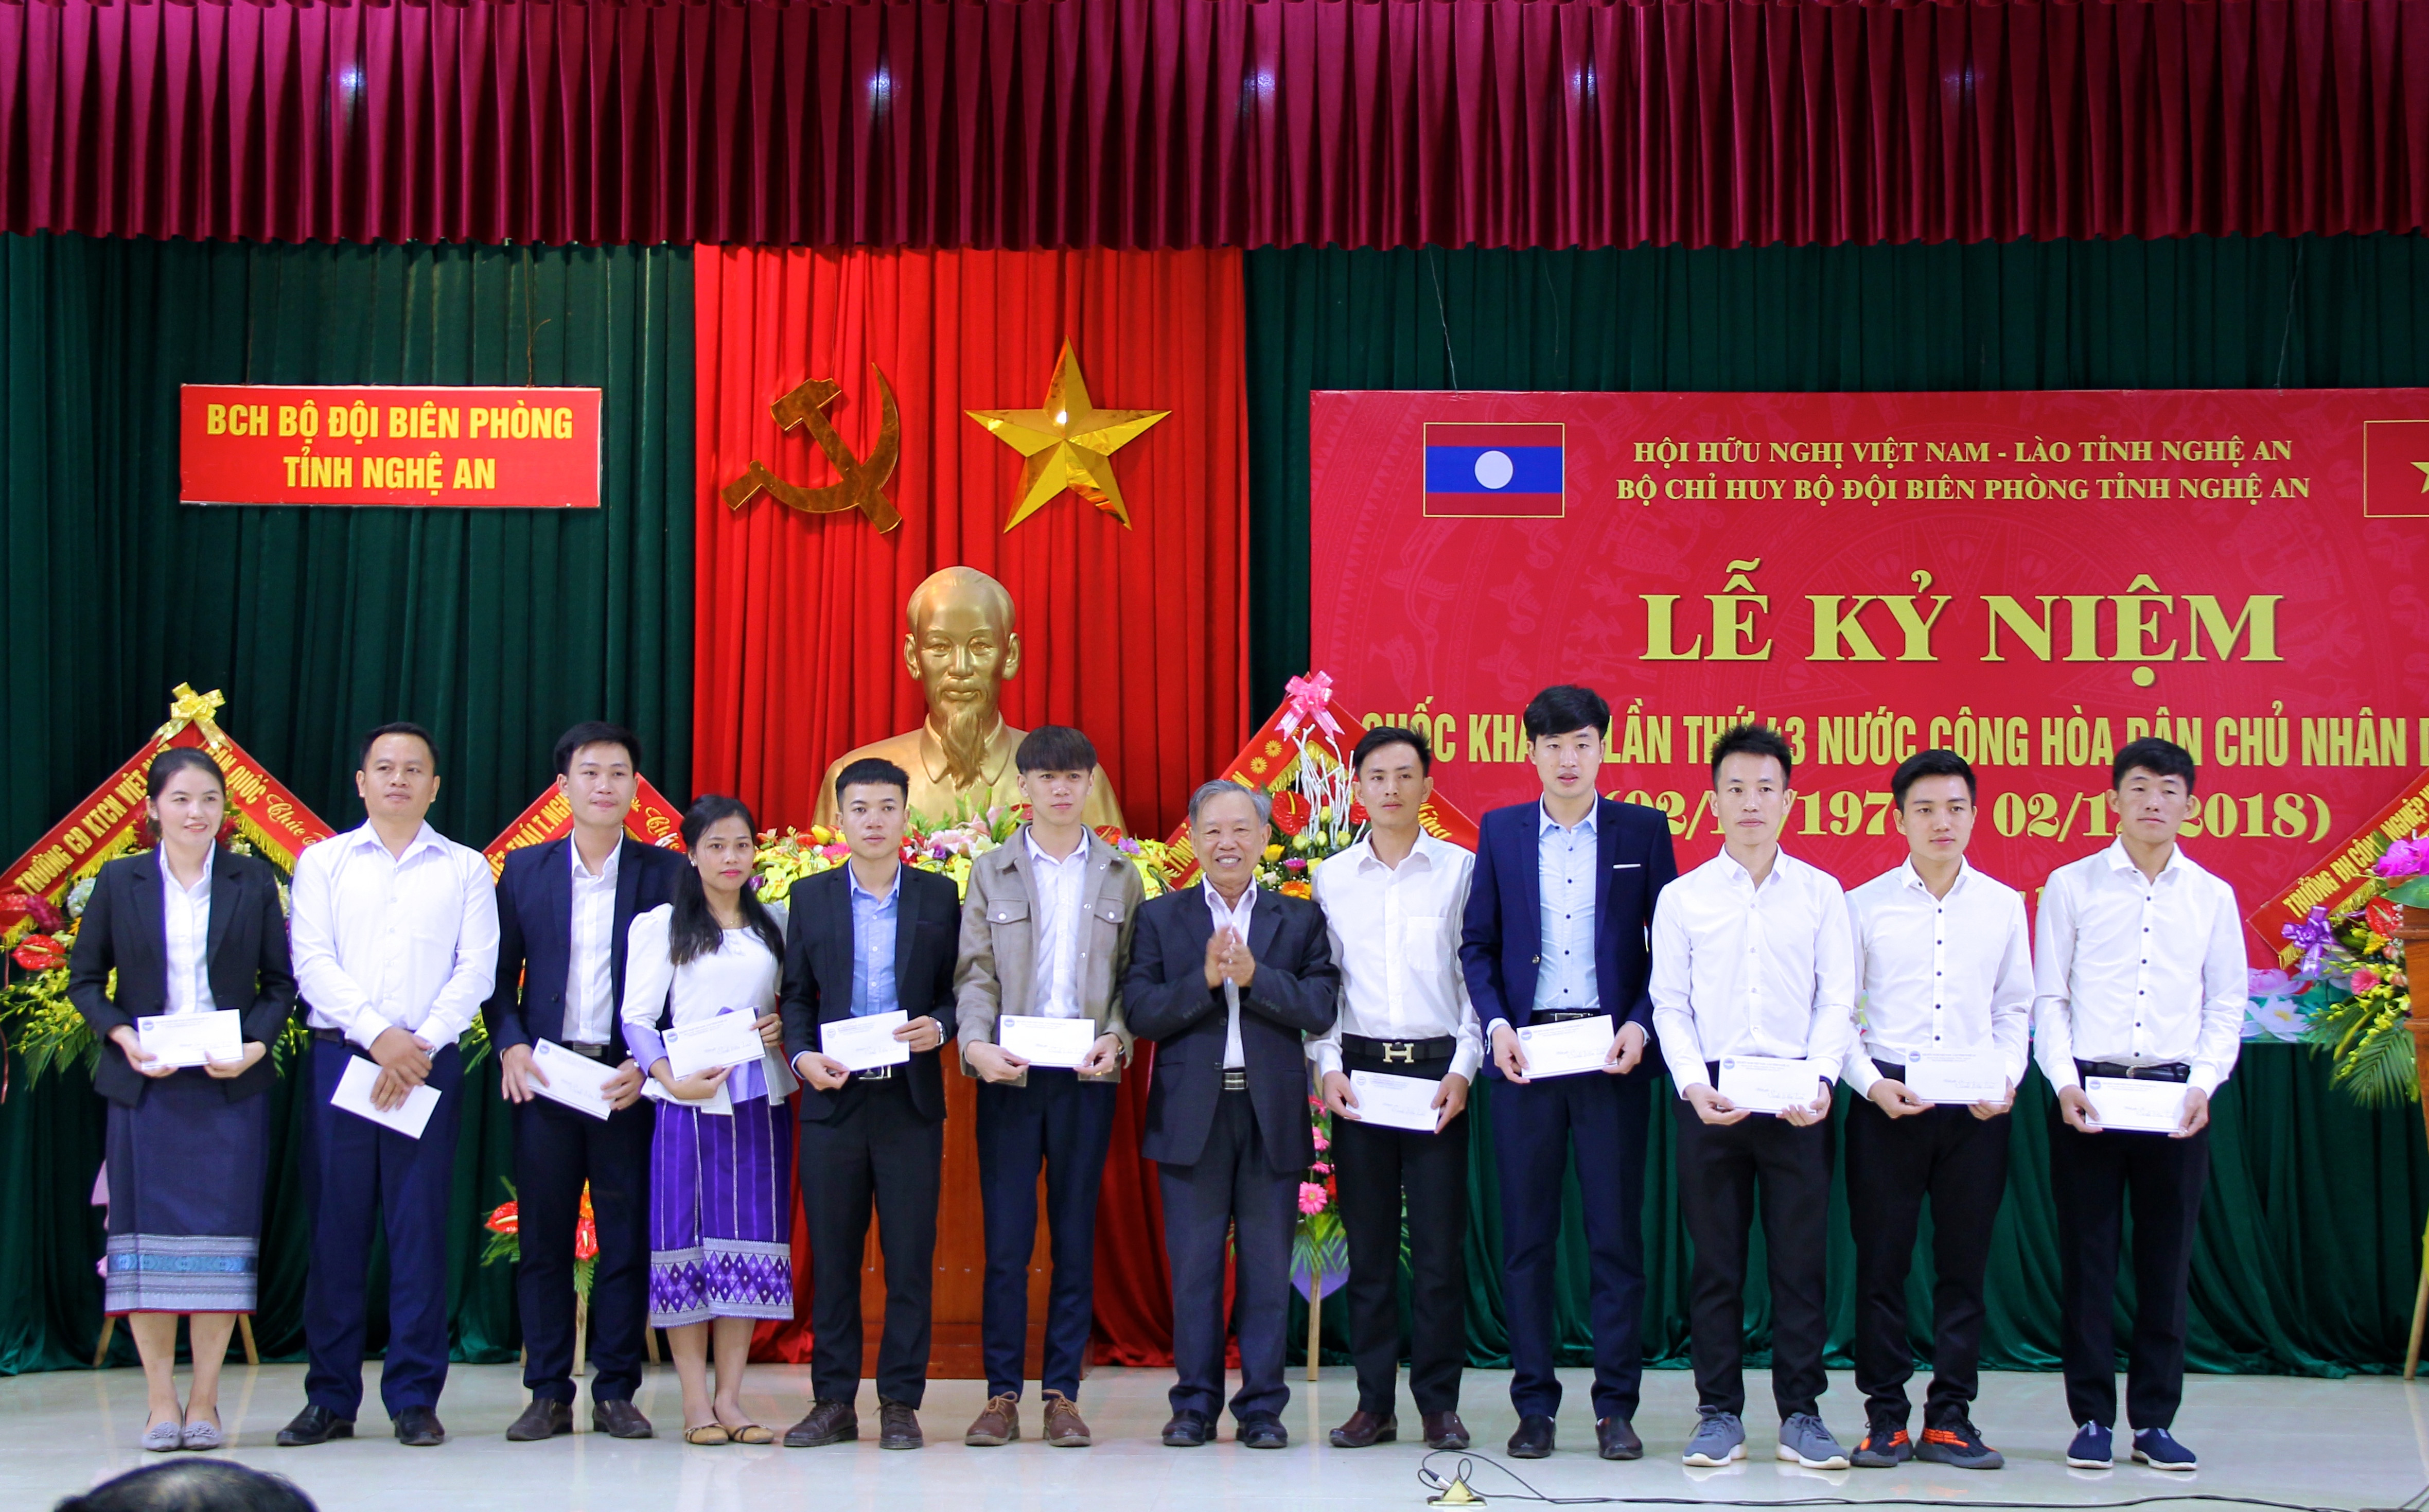 Hội hữu nghị Việt Nam - Lào tỉnh Nghệ An cũng dành tặng 11 suất học bổng cho các du học sinh Lào đang học tại các trường Đại học, Cao đẳng tại Nghệ An, có thành tích học tập xuất sắc